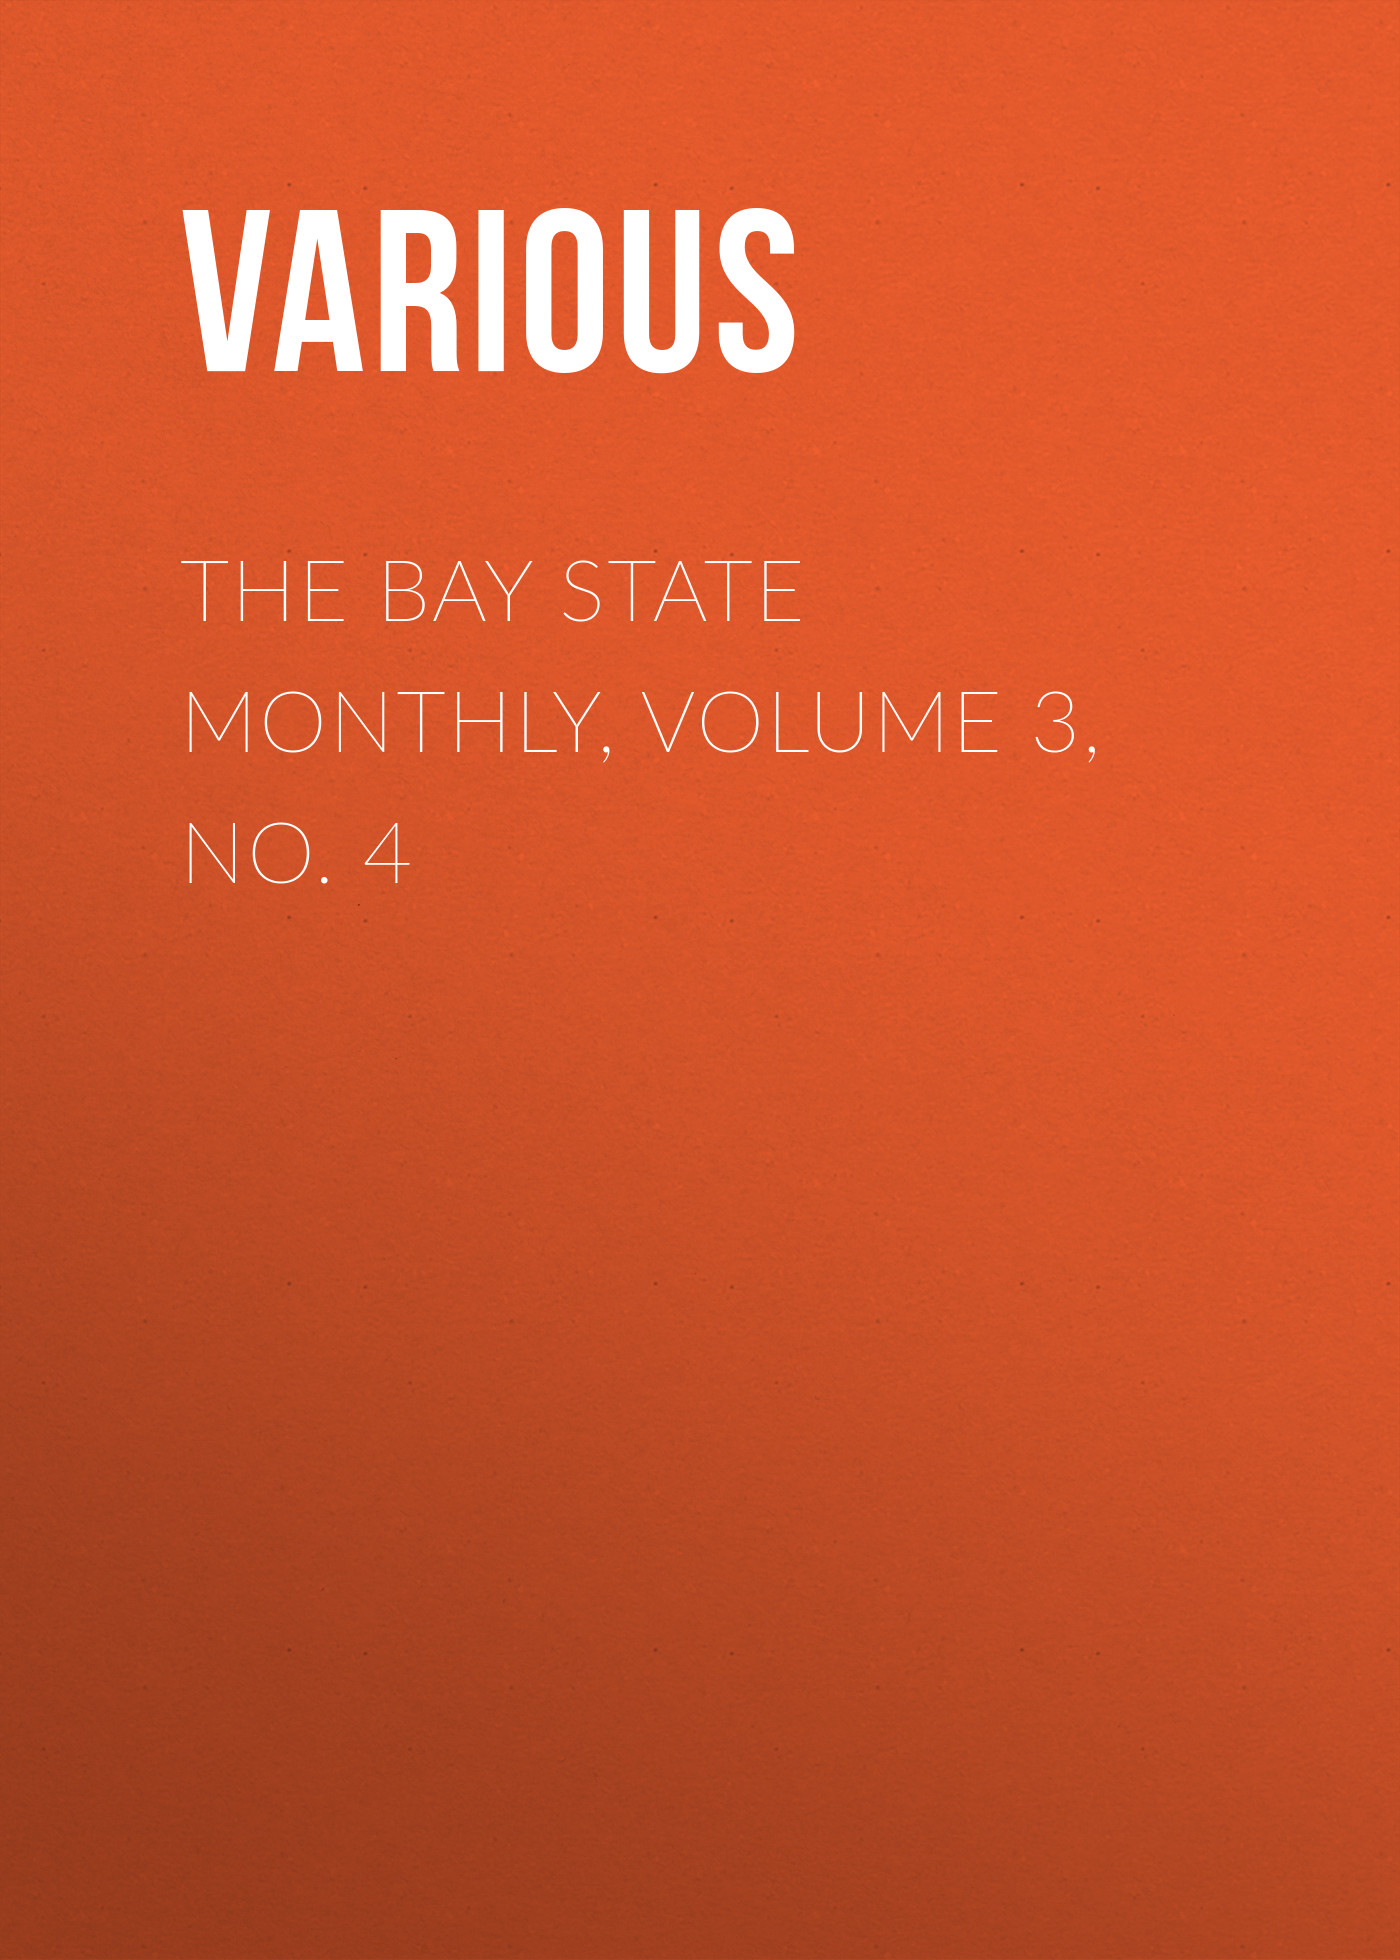 Книга The Bay State Monthly, Volume 3, No. 4 из серии , созданная  Various, может относится к жанру Зарубежная старинная литература, Журналы, Зарубежная образовательная литература. Стоимость электронной книги The Bay State Monthly, Volume 3, No. 4 с идентификатором 35502291 составляет 0 руб.